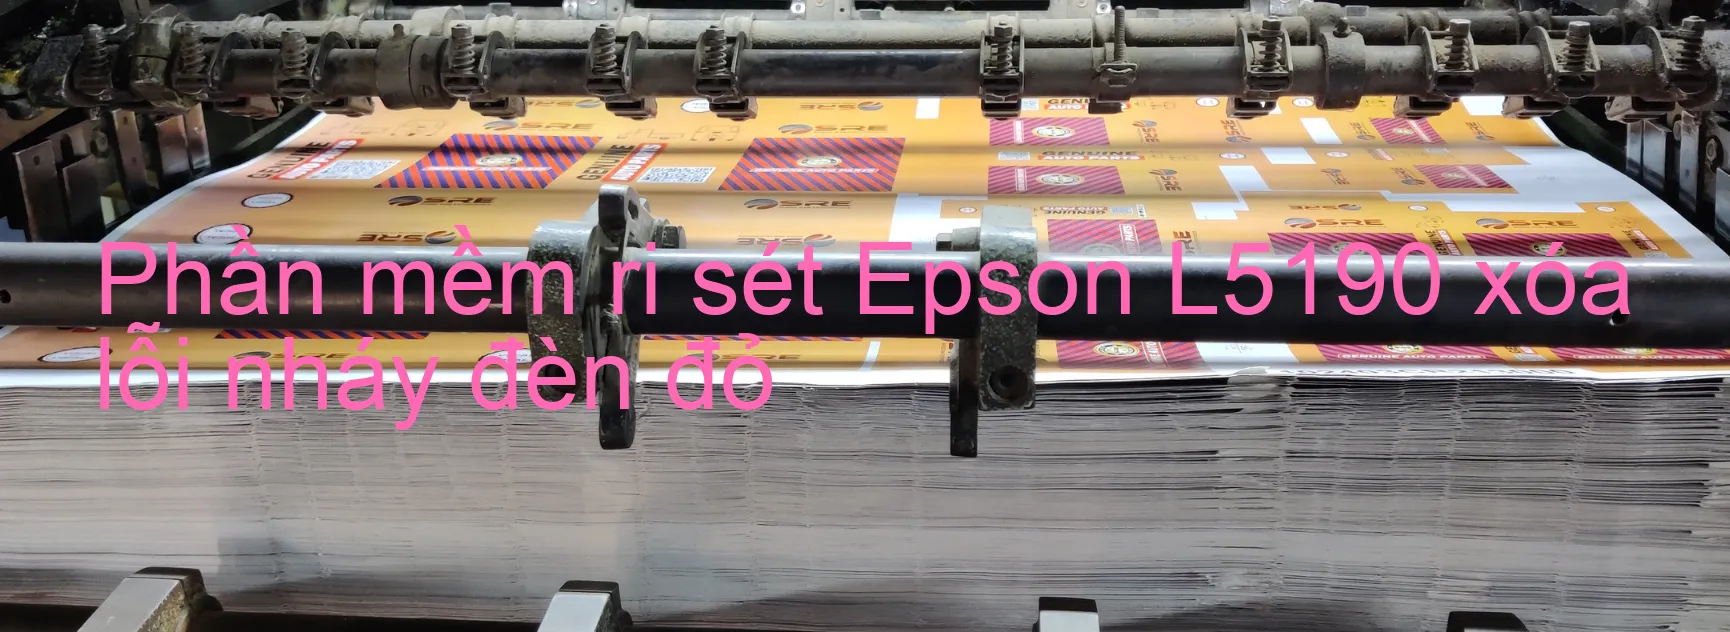 Phần mềm reset Epson L5190 xóa lỗi nháy đèn đỏ